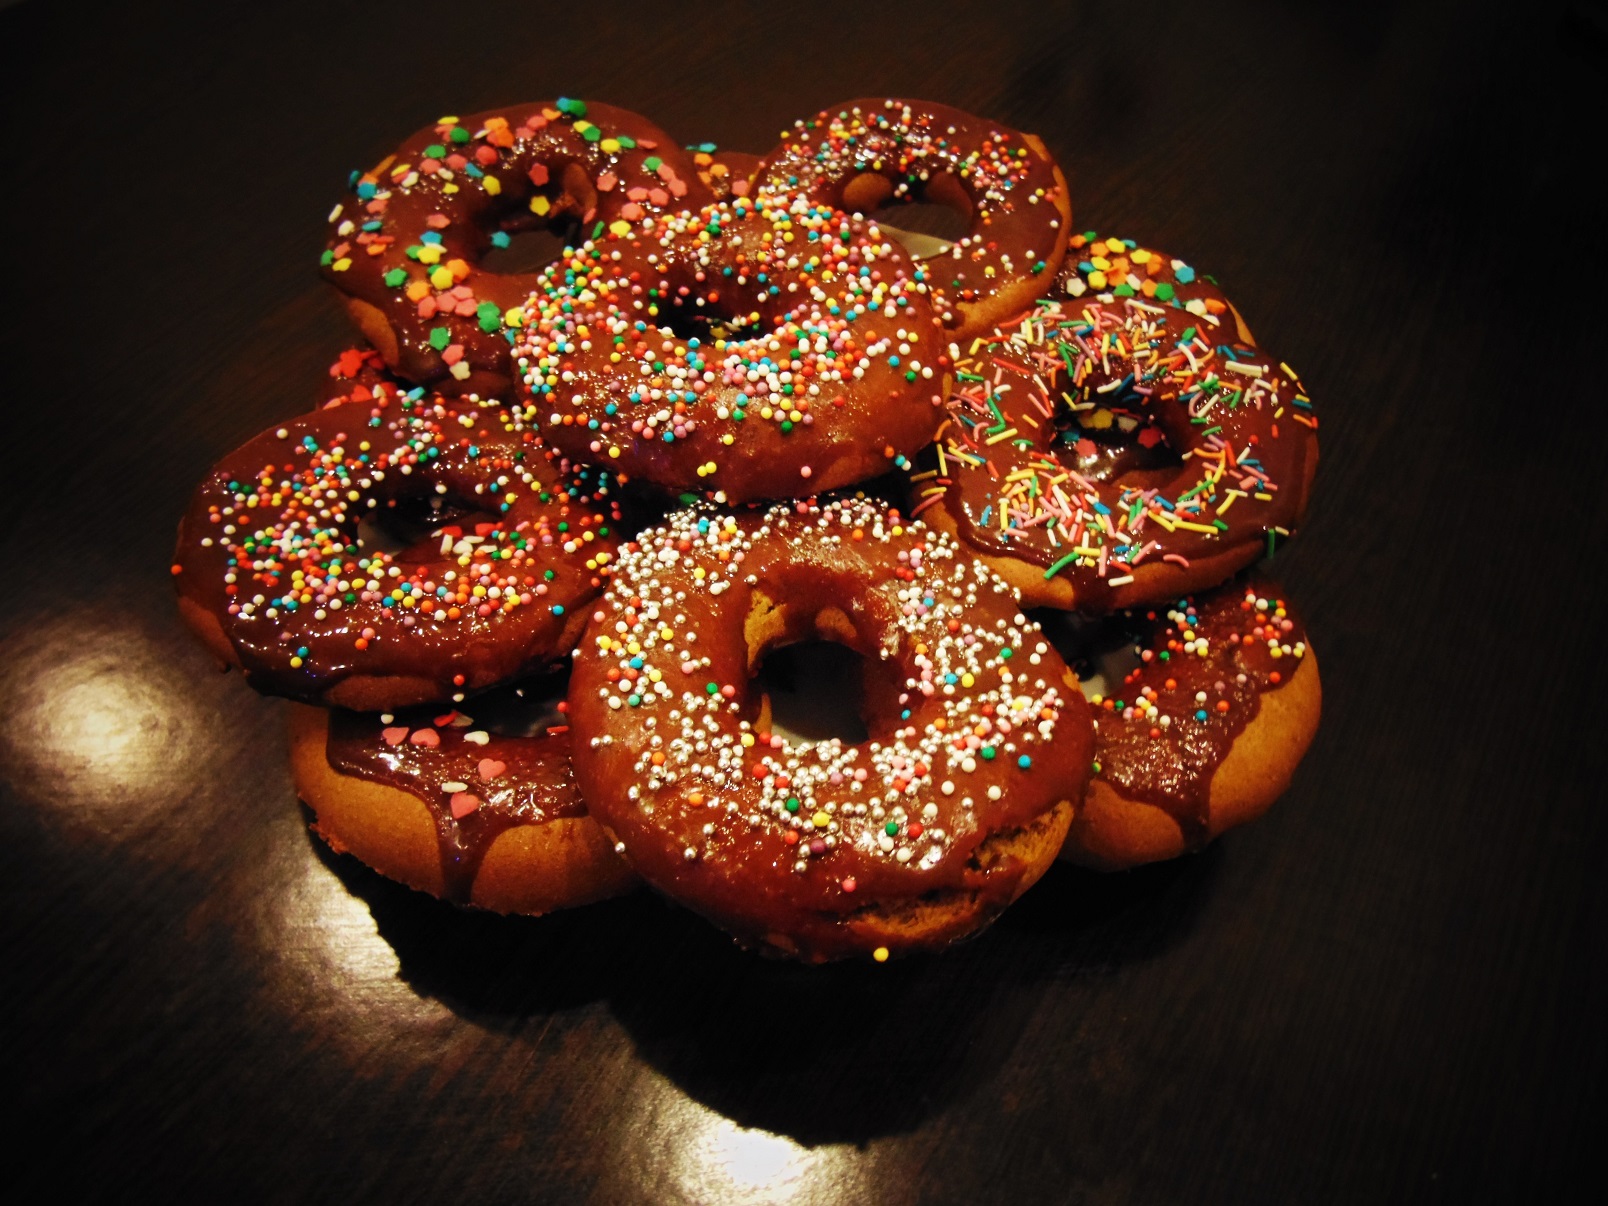 Glazed donuts. 